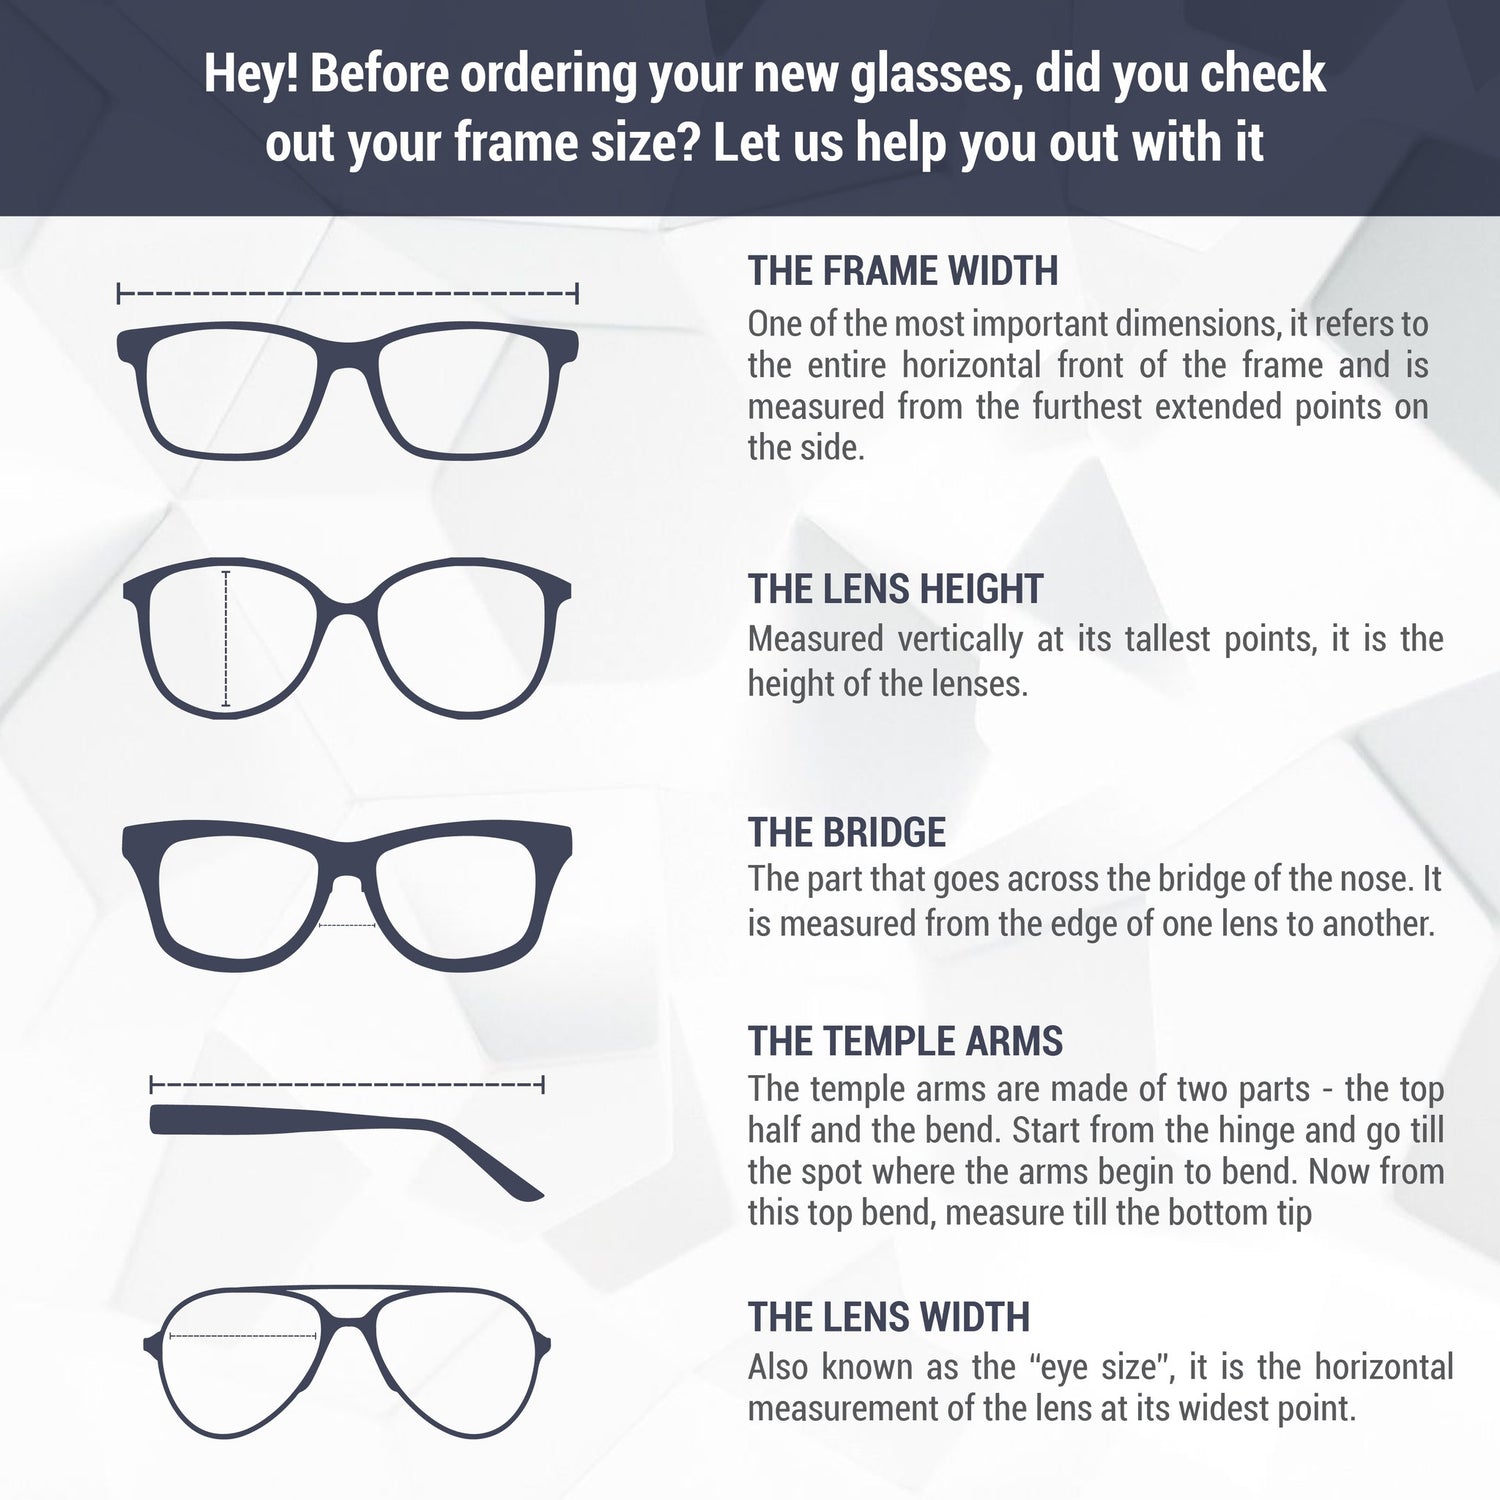 Monture de lunettes Avanglion | Modèle AV10540A